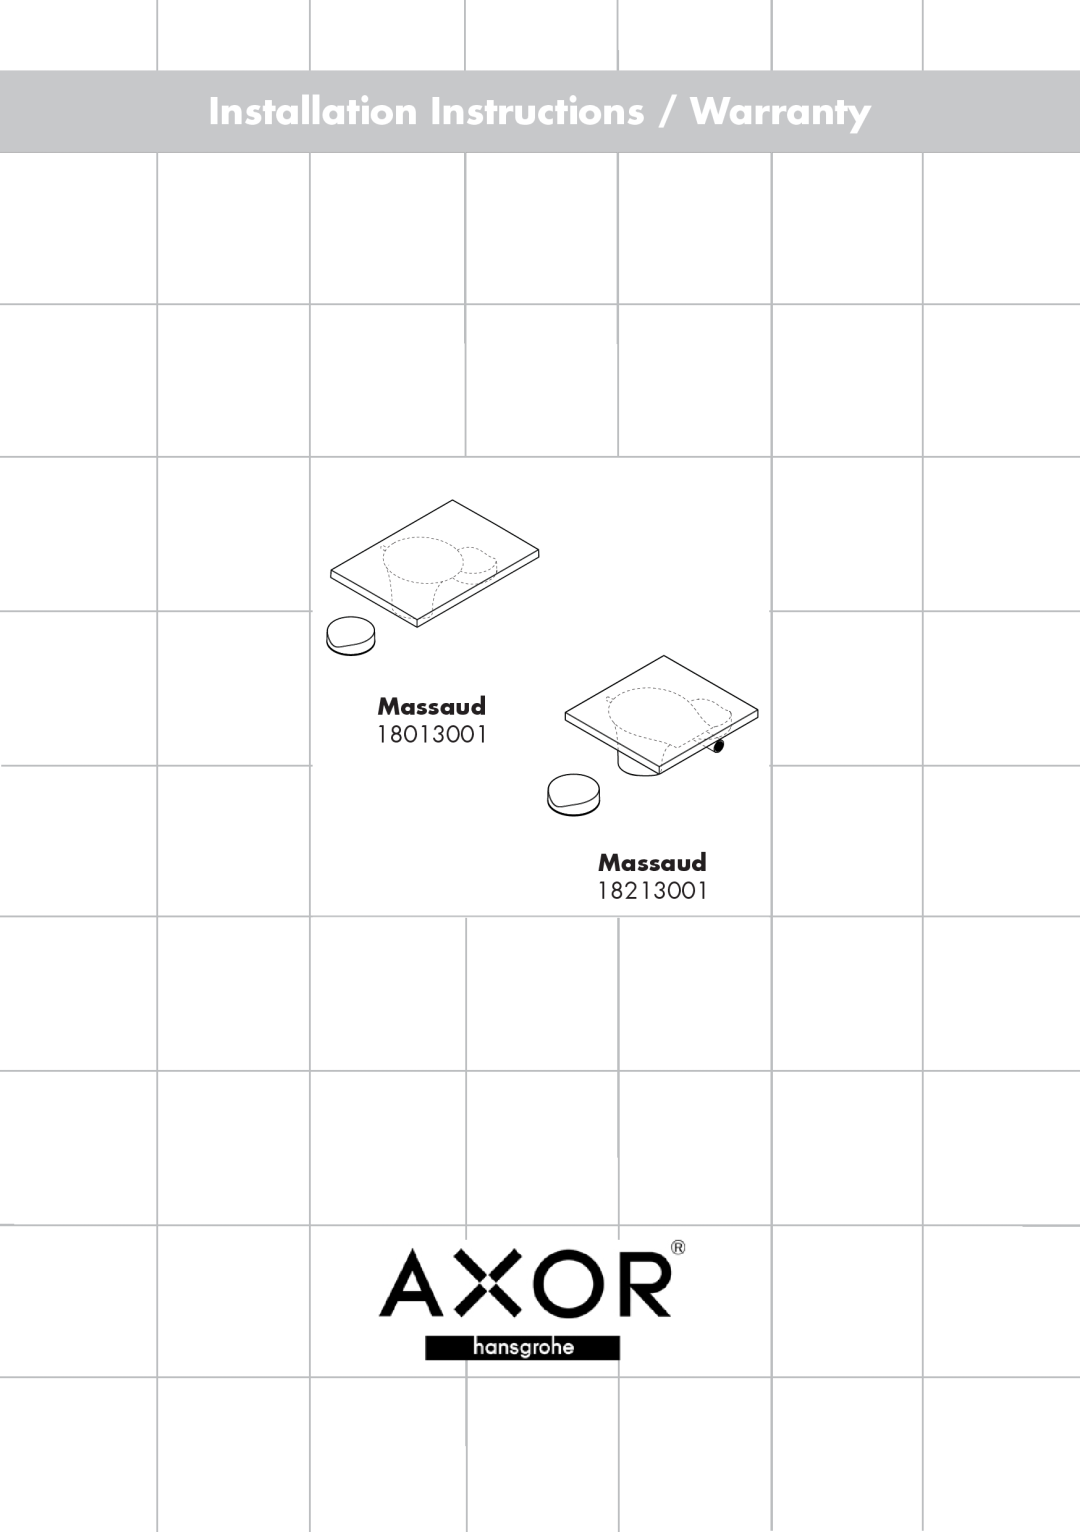 Axor 18013001 installation instructions Massaud, Installation Instructions / Warranty 